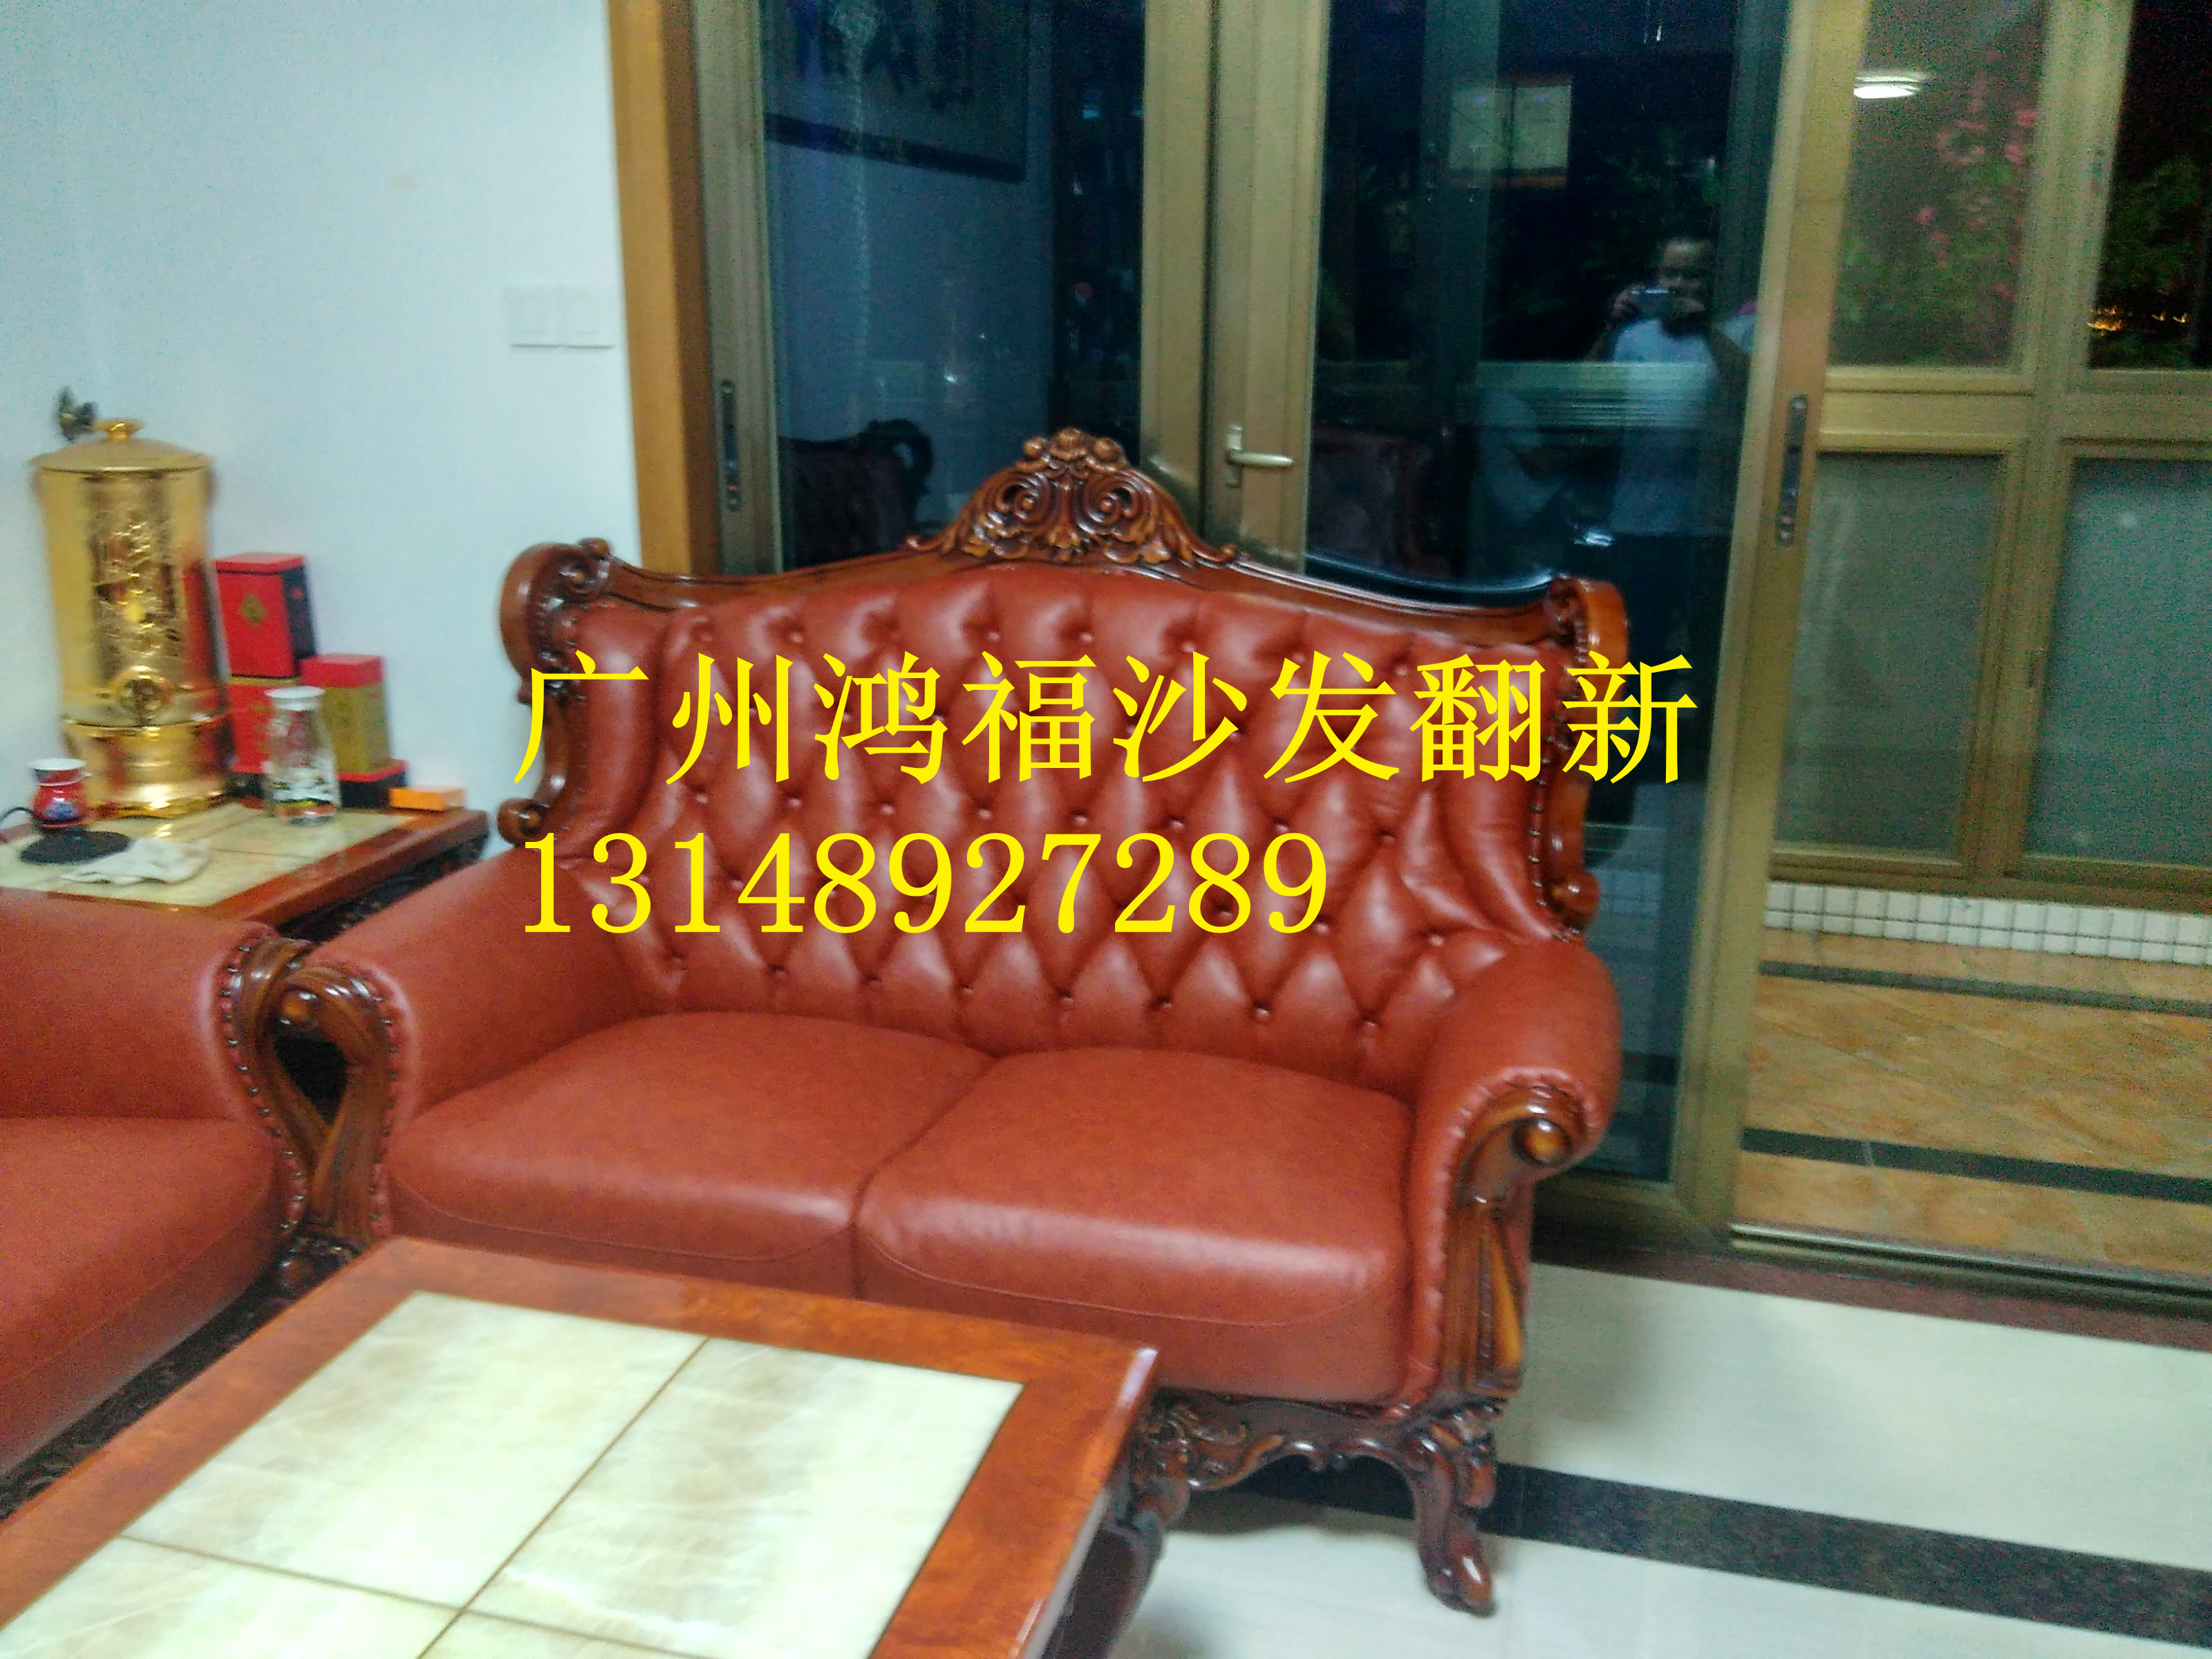 供应用于沙发的广州番禺区沙发维修换皮换布、家庭沙发、大班椅、KTV沙发、沐足桑拿椅、图片